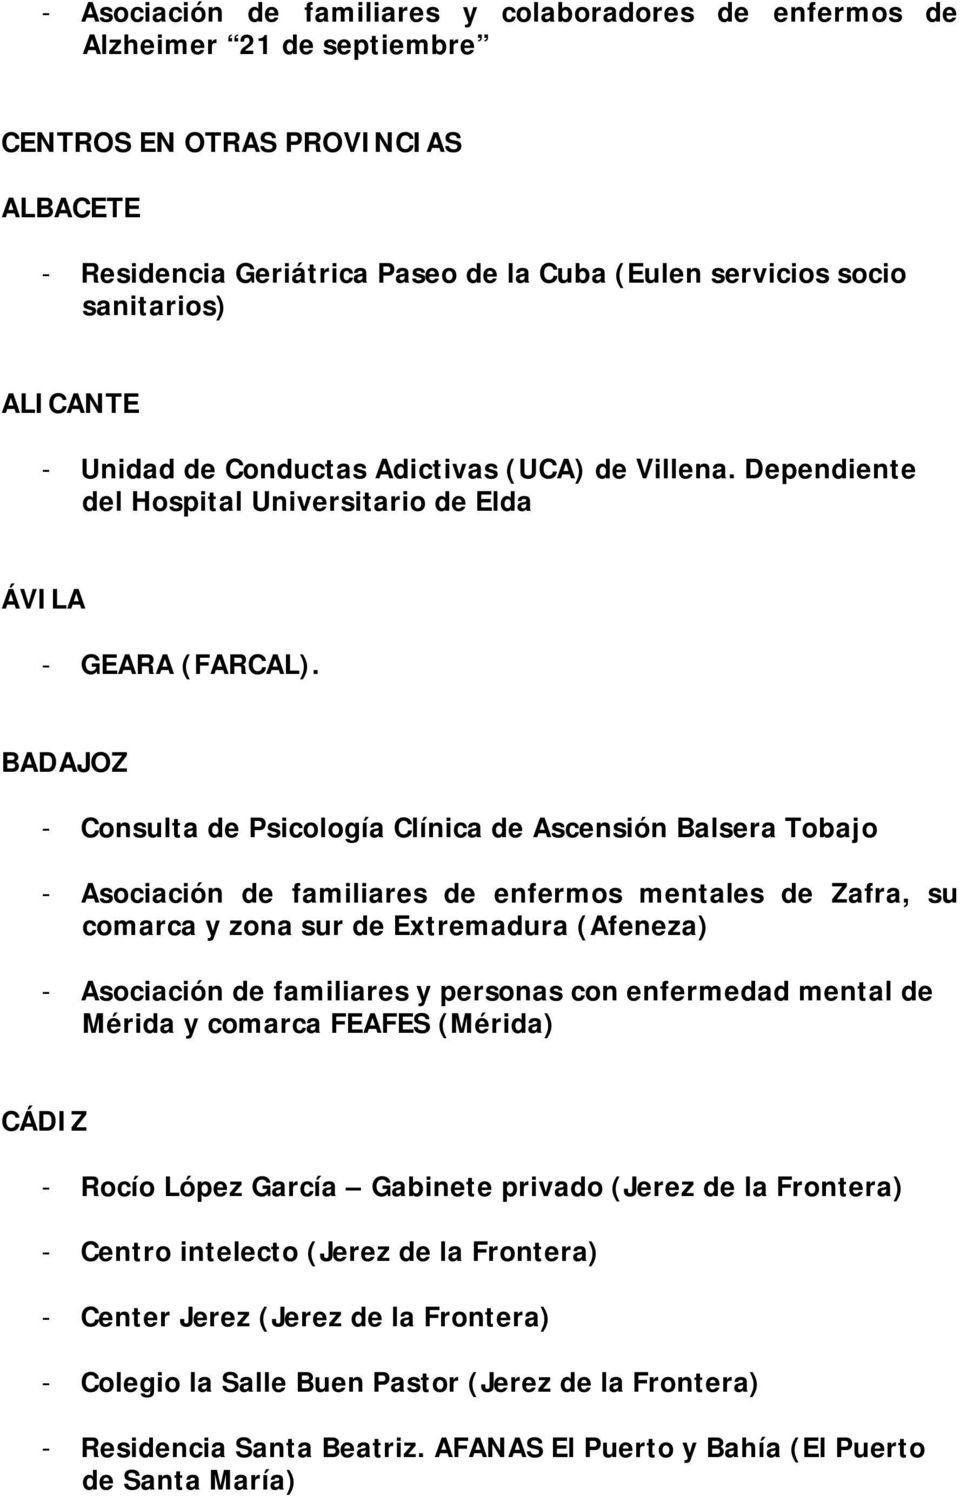 BADAJOZ - Consulta de Psicología Clínica de Ascensión Balsera Tobajo - Asociación de familiares de enfermos mentales de Zafra, su comarca y zona sur de Extremadura (Afeneza) - Asociación de